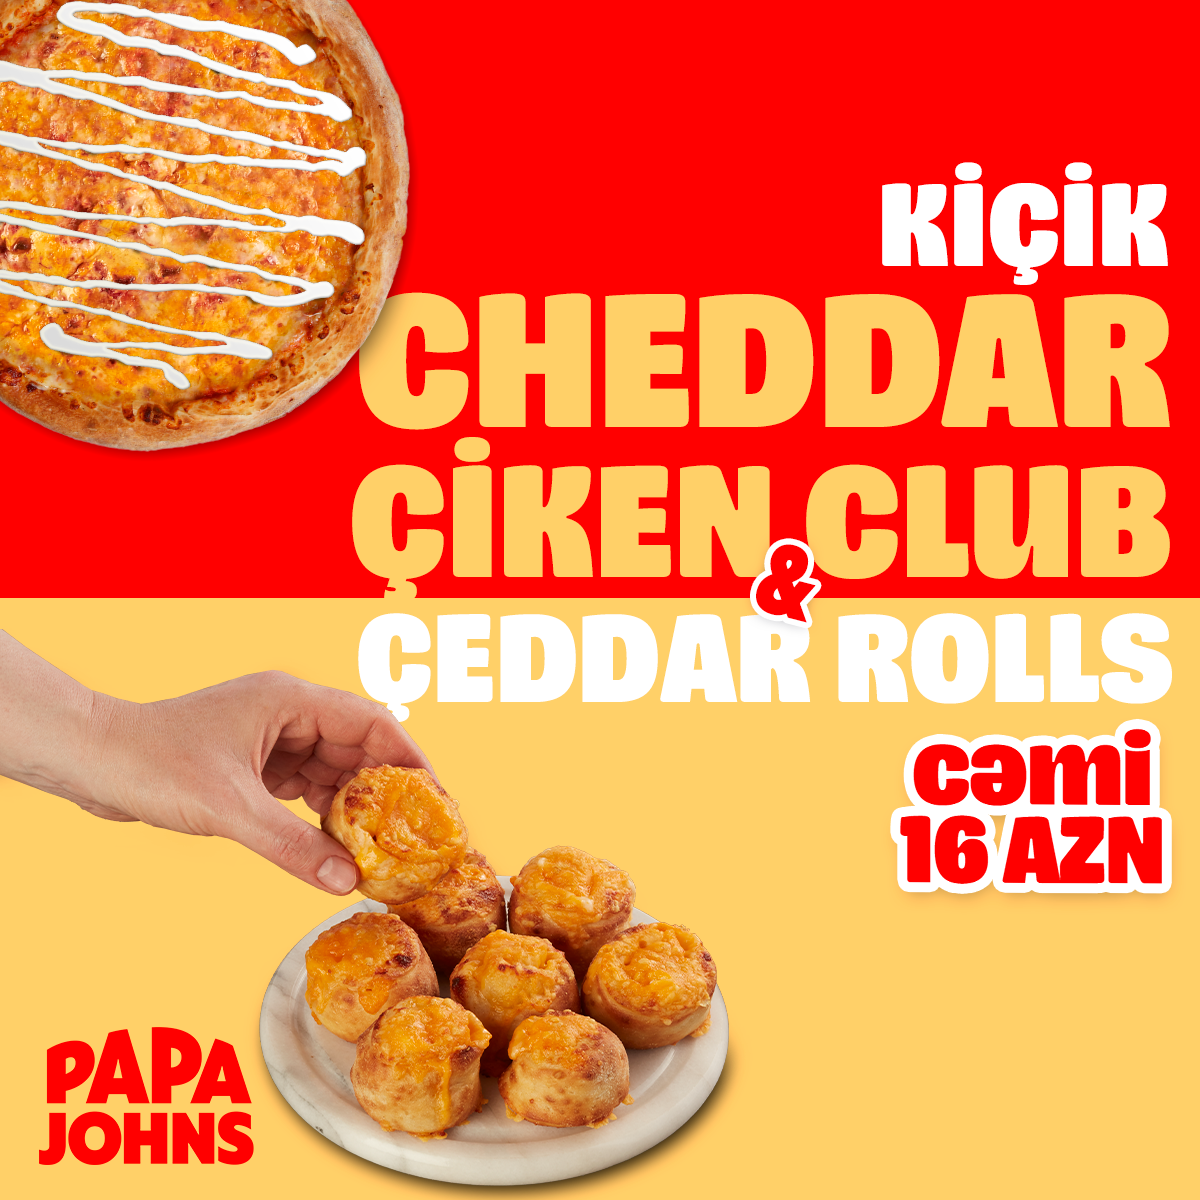 Cheddar Chicken Club